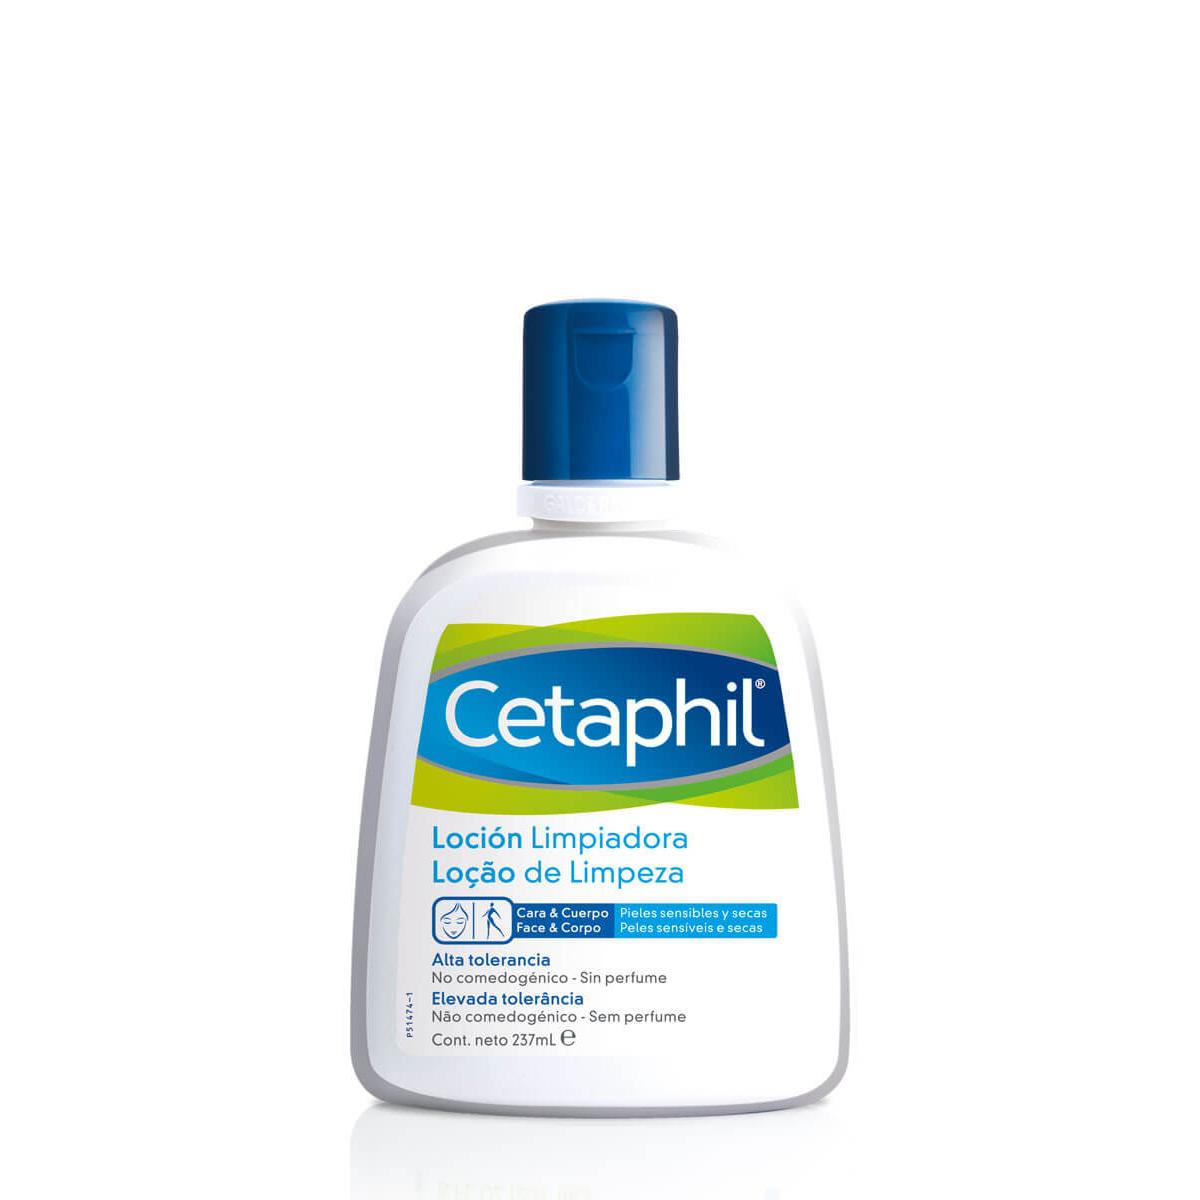 Cetaphil - Cetaphil loción limpiadora 237 ml